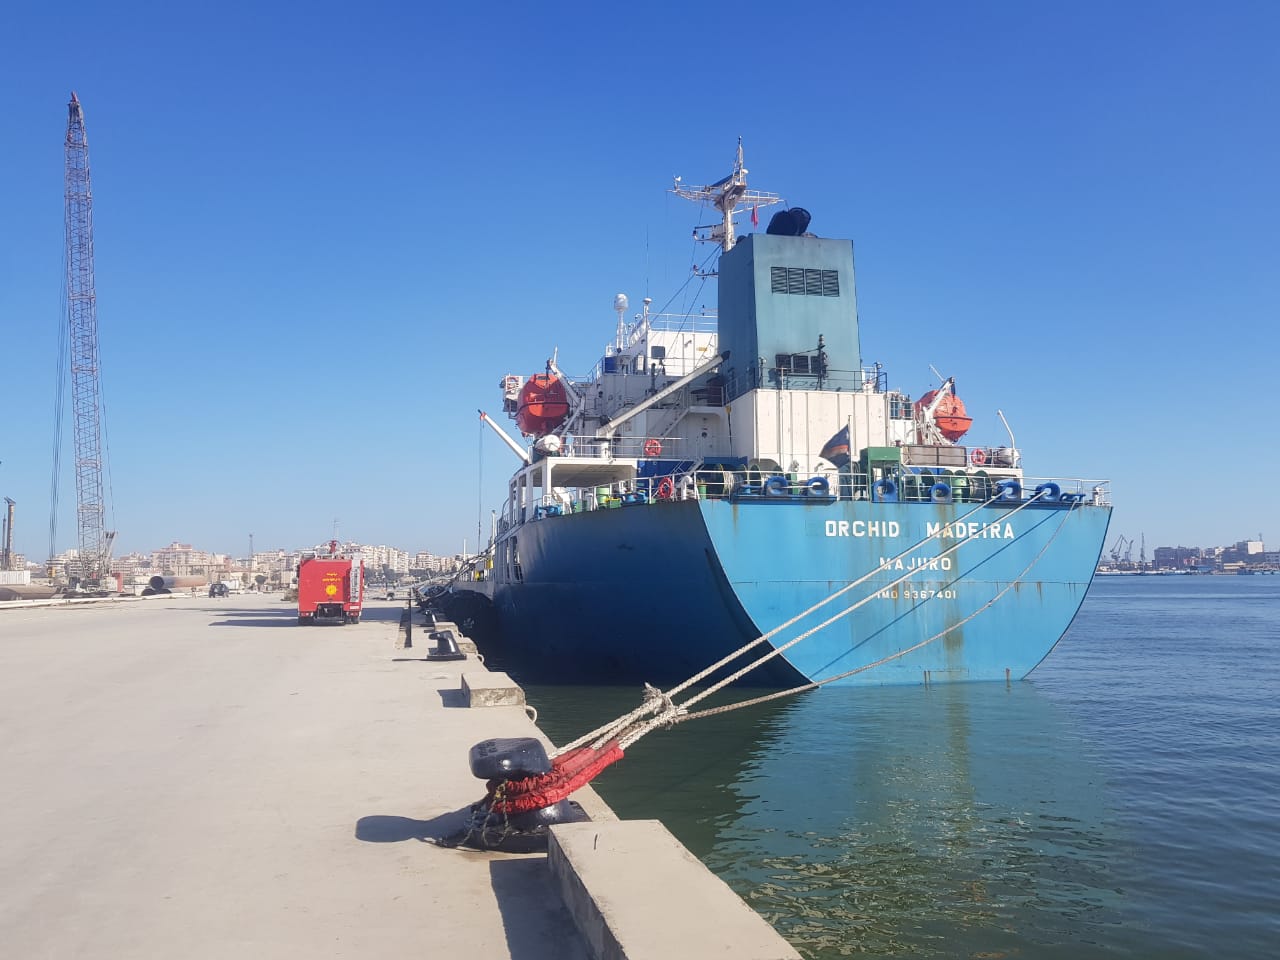 استقبل ميناء غرب بورسعيد السفينة Orchid Madeira بأطنان من مادة الإيثيلين